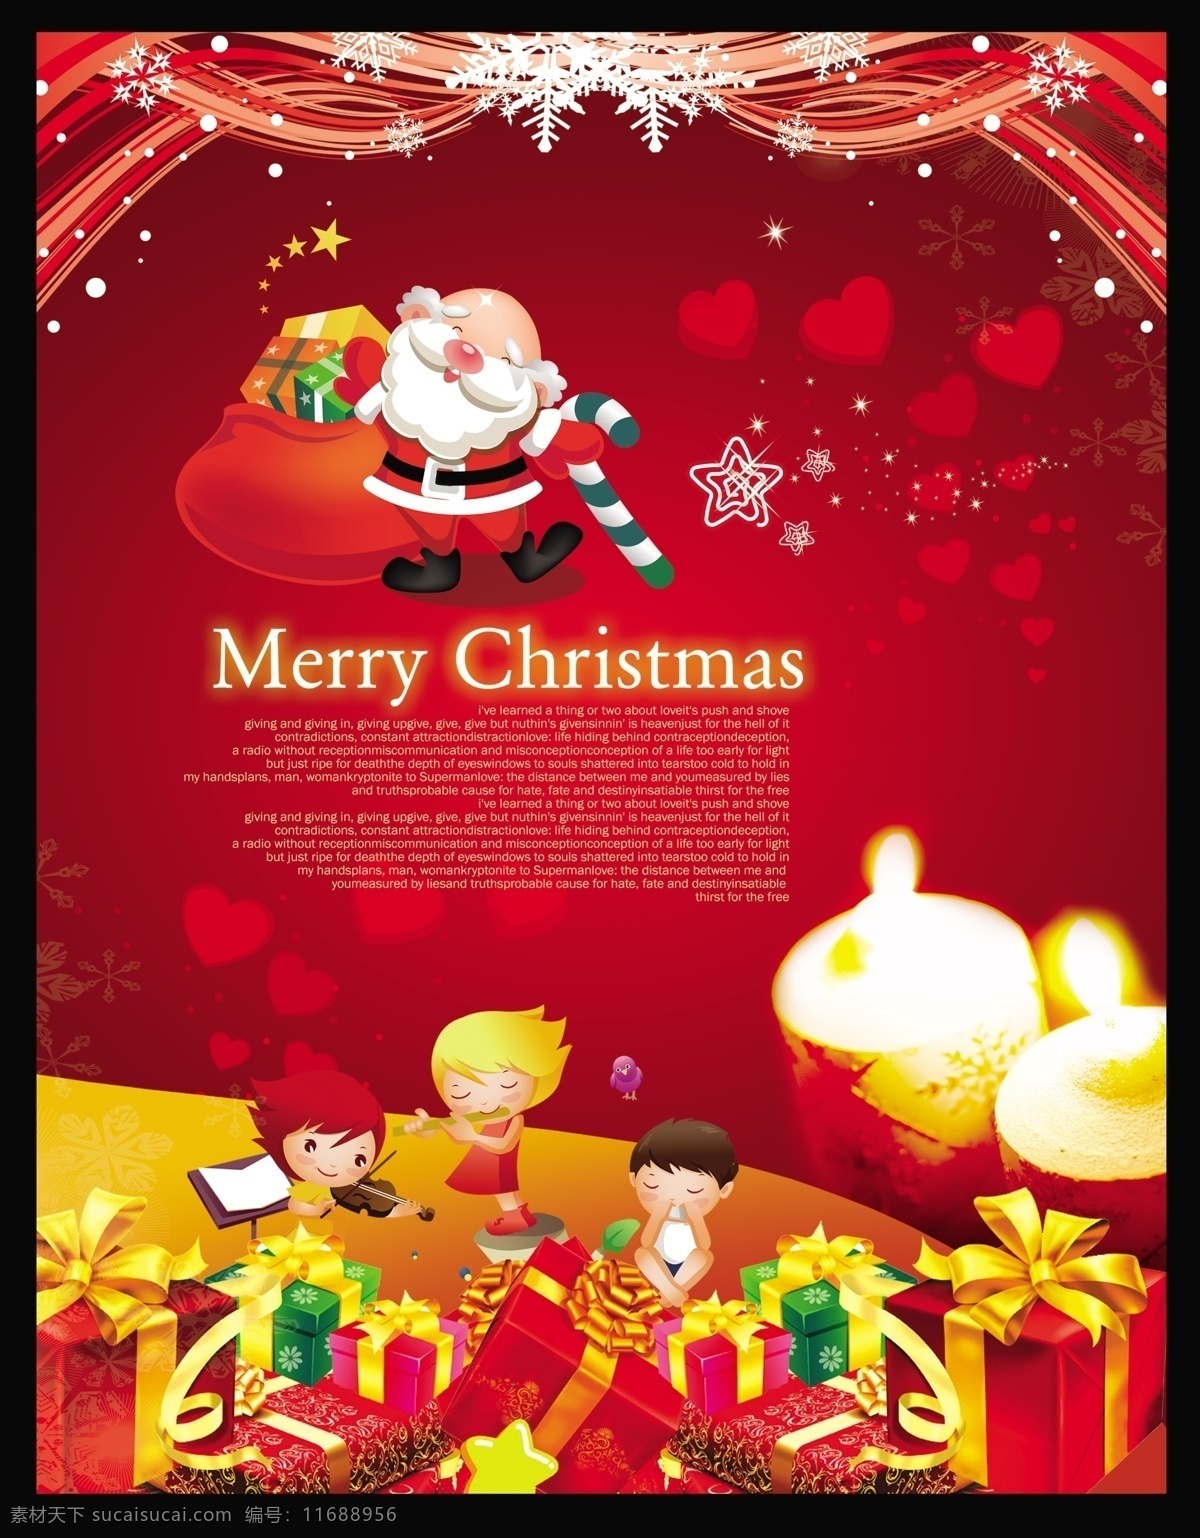 快乐 圣诞节 海报 快乐圣诞节 圣诞老人 圣诞素材 圣诞礼物 礼物 礼品 礼包 蜡烛 儿童 小孩 儿童素材 心 花纹花边 星星 星光 雪花 草地 节日素材 psd素材 红色